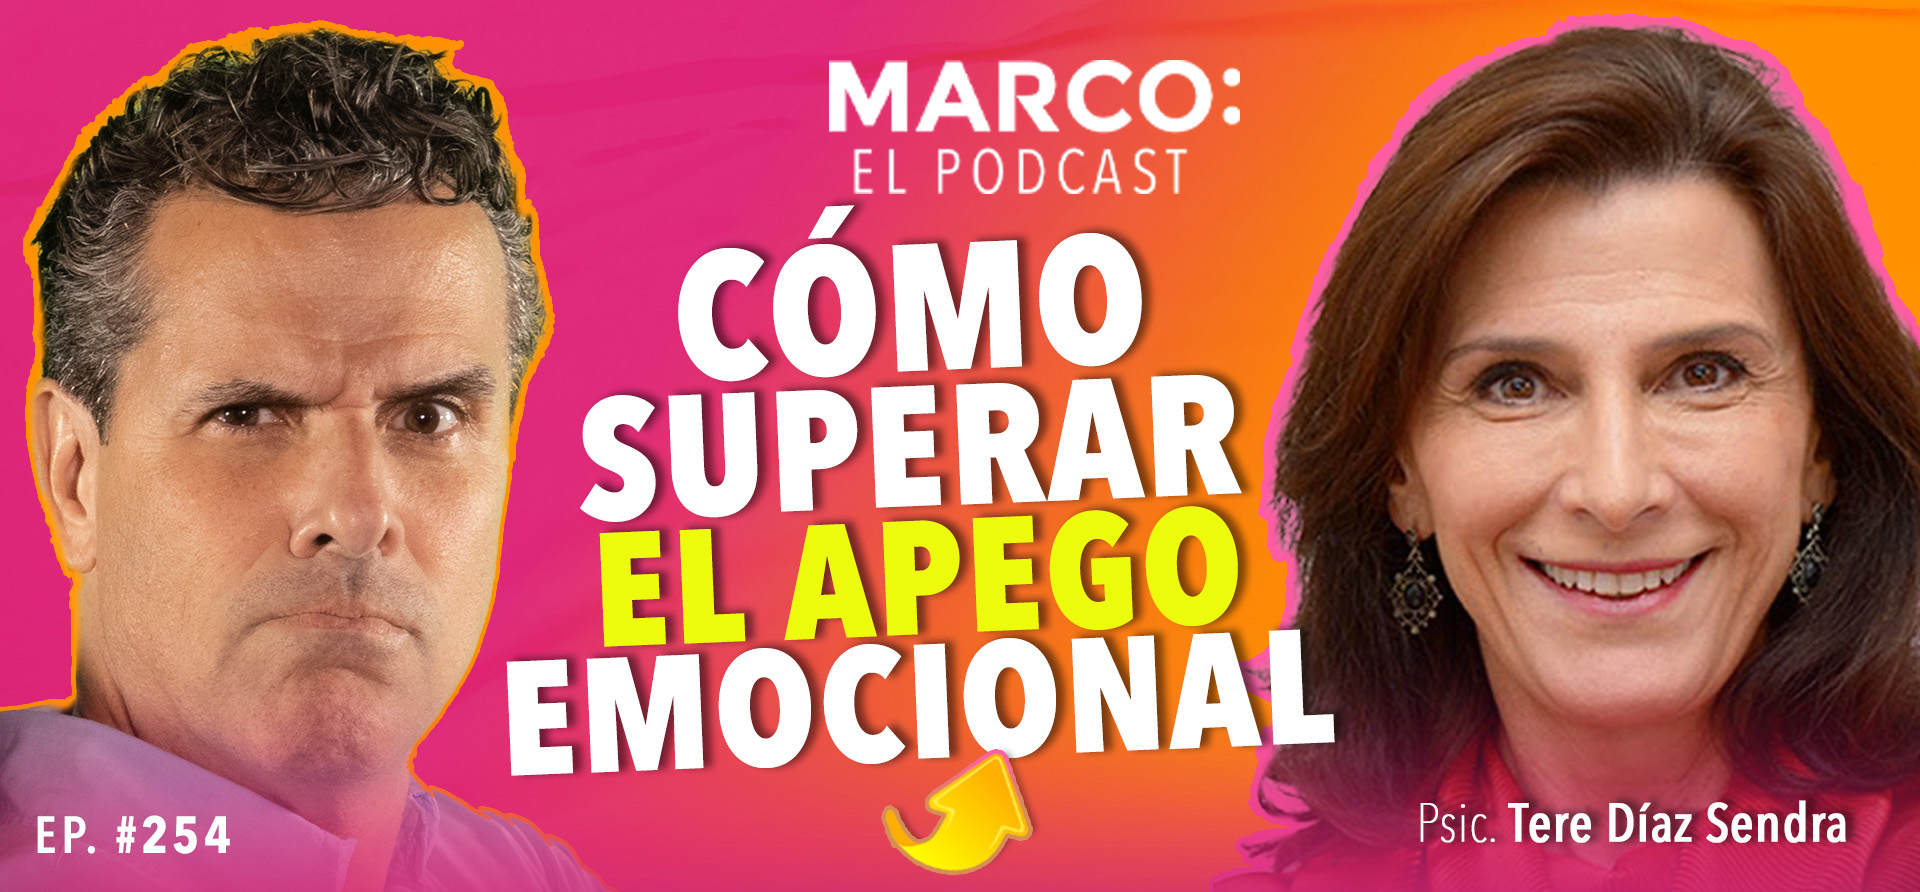 Marco el podcast apego emocional